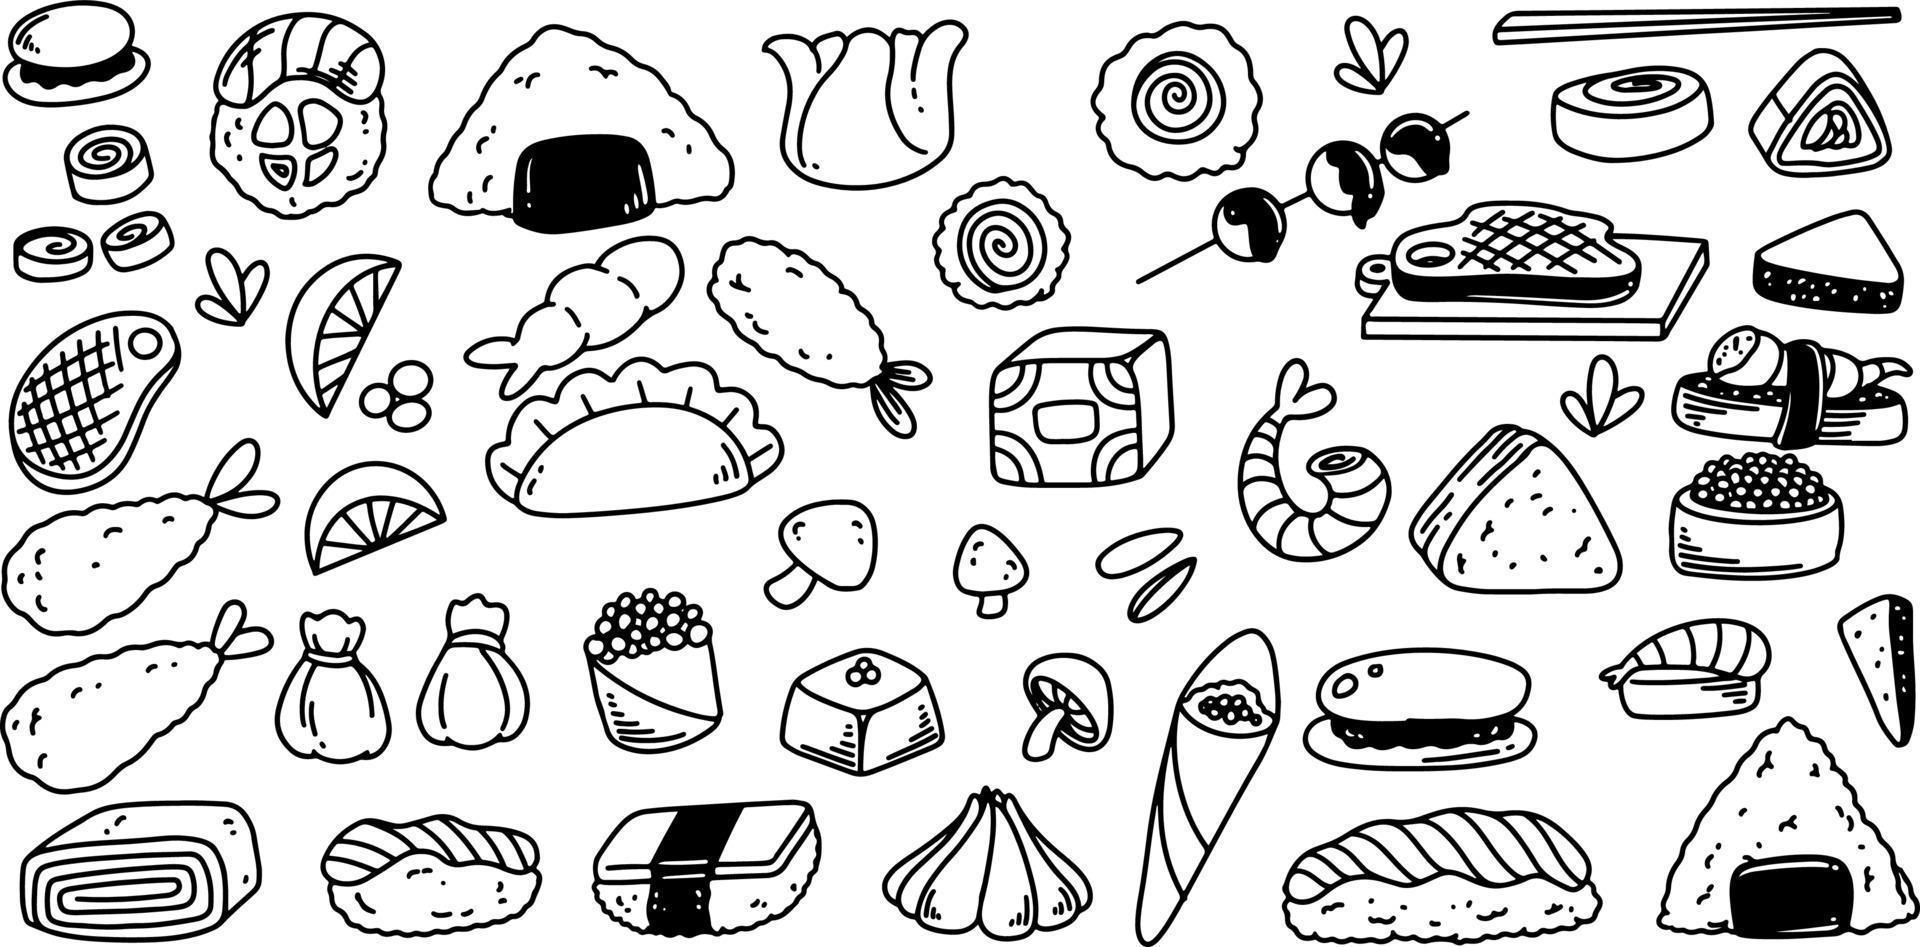 Handzeichnung des Doodle-Food-Sets isoliert auf weißem Hintergrund. vektor